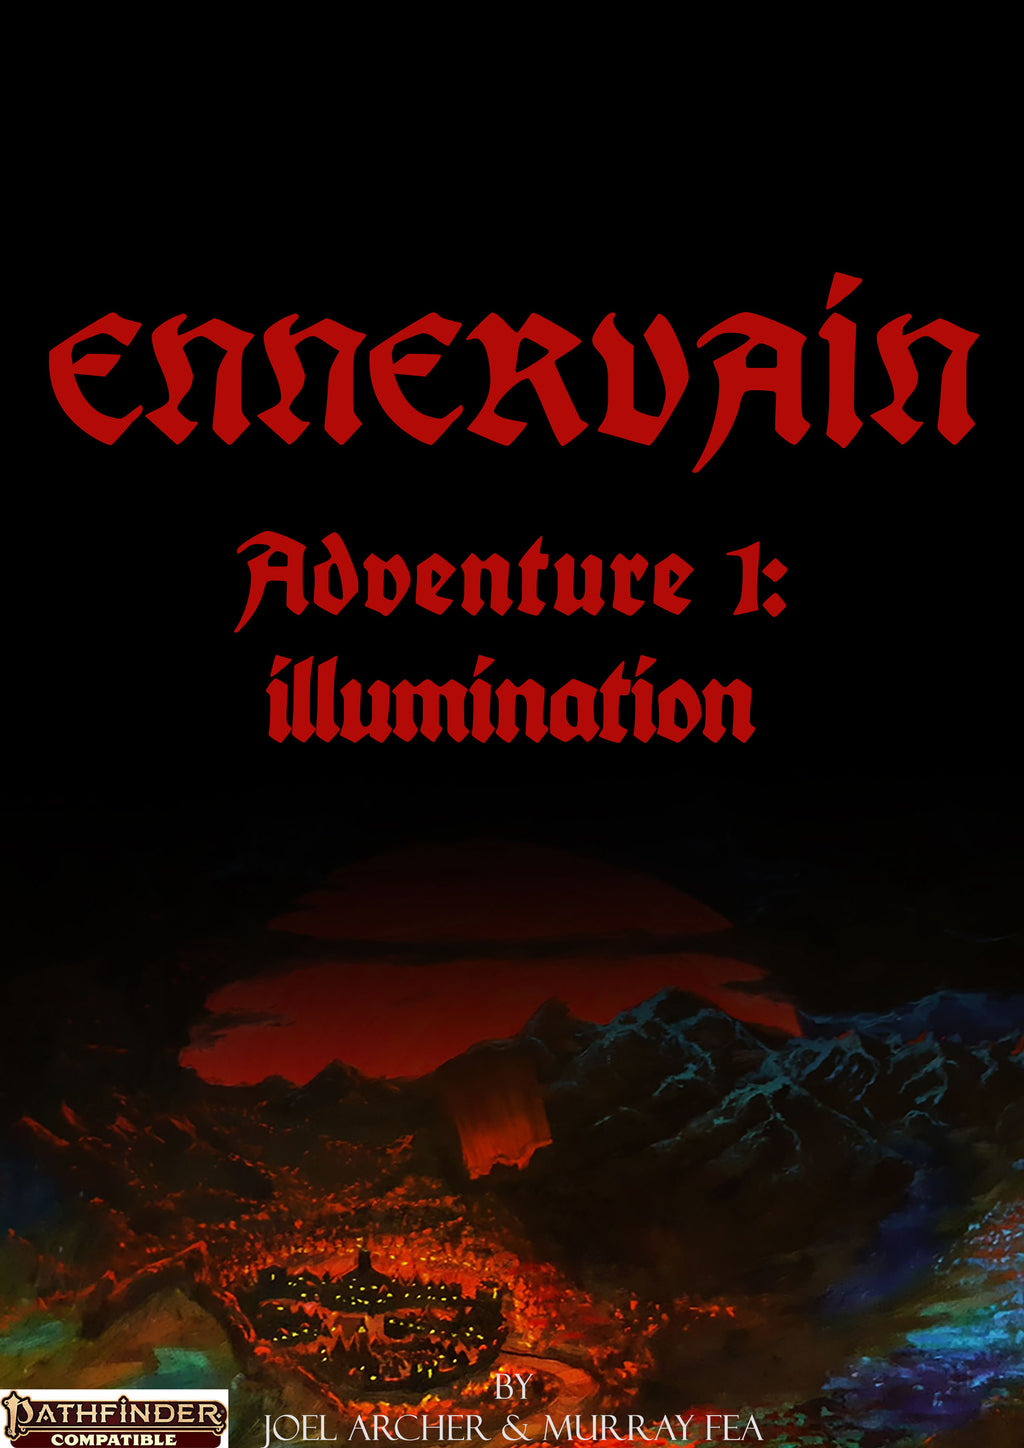 Ennervain Adventure 1 Illumination